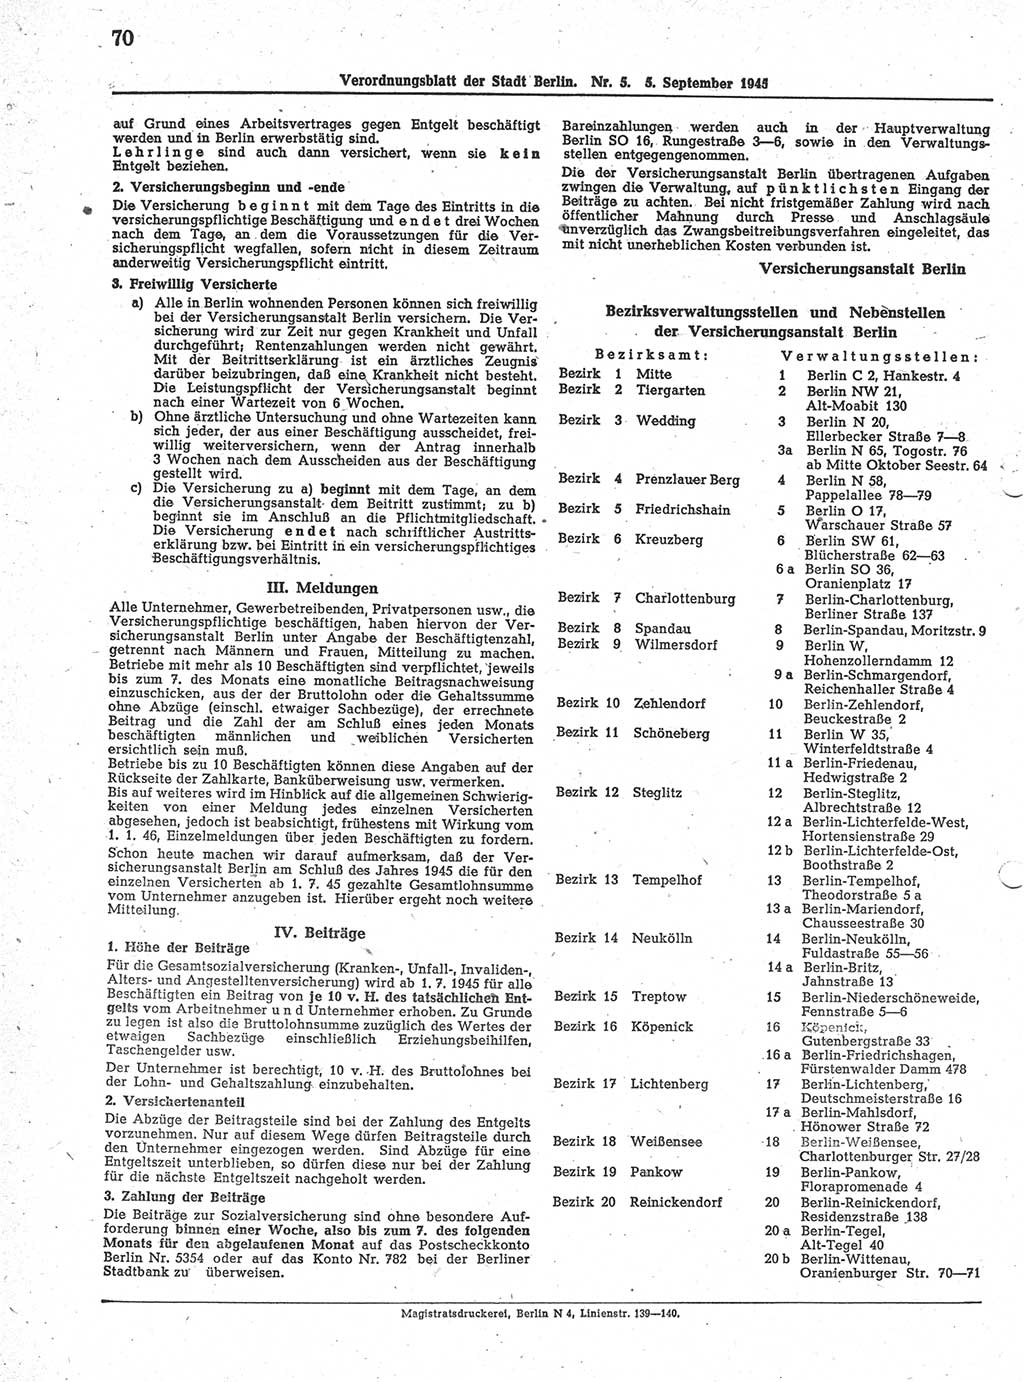 Verordnungsblatt (VOBl.) der Stadt Berlin 1945, Seite 70 (VOBl. Bln. 1945, S. 70)